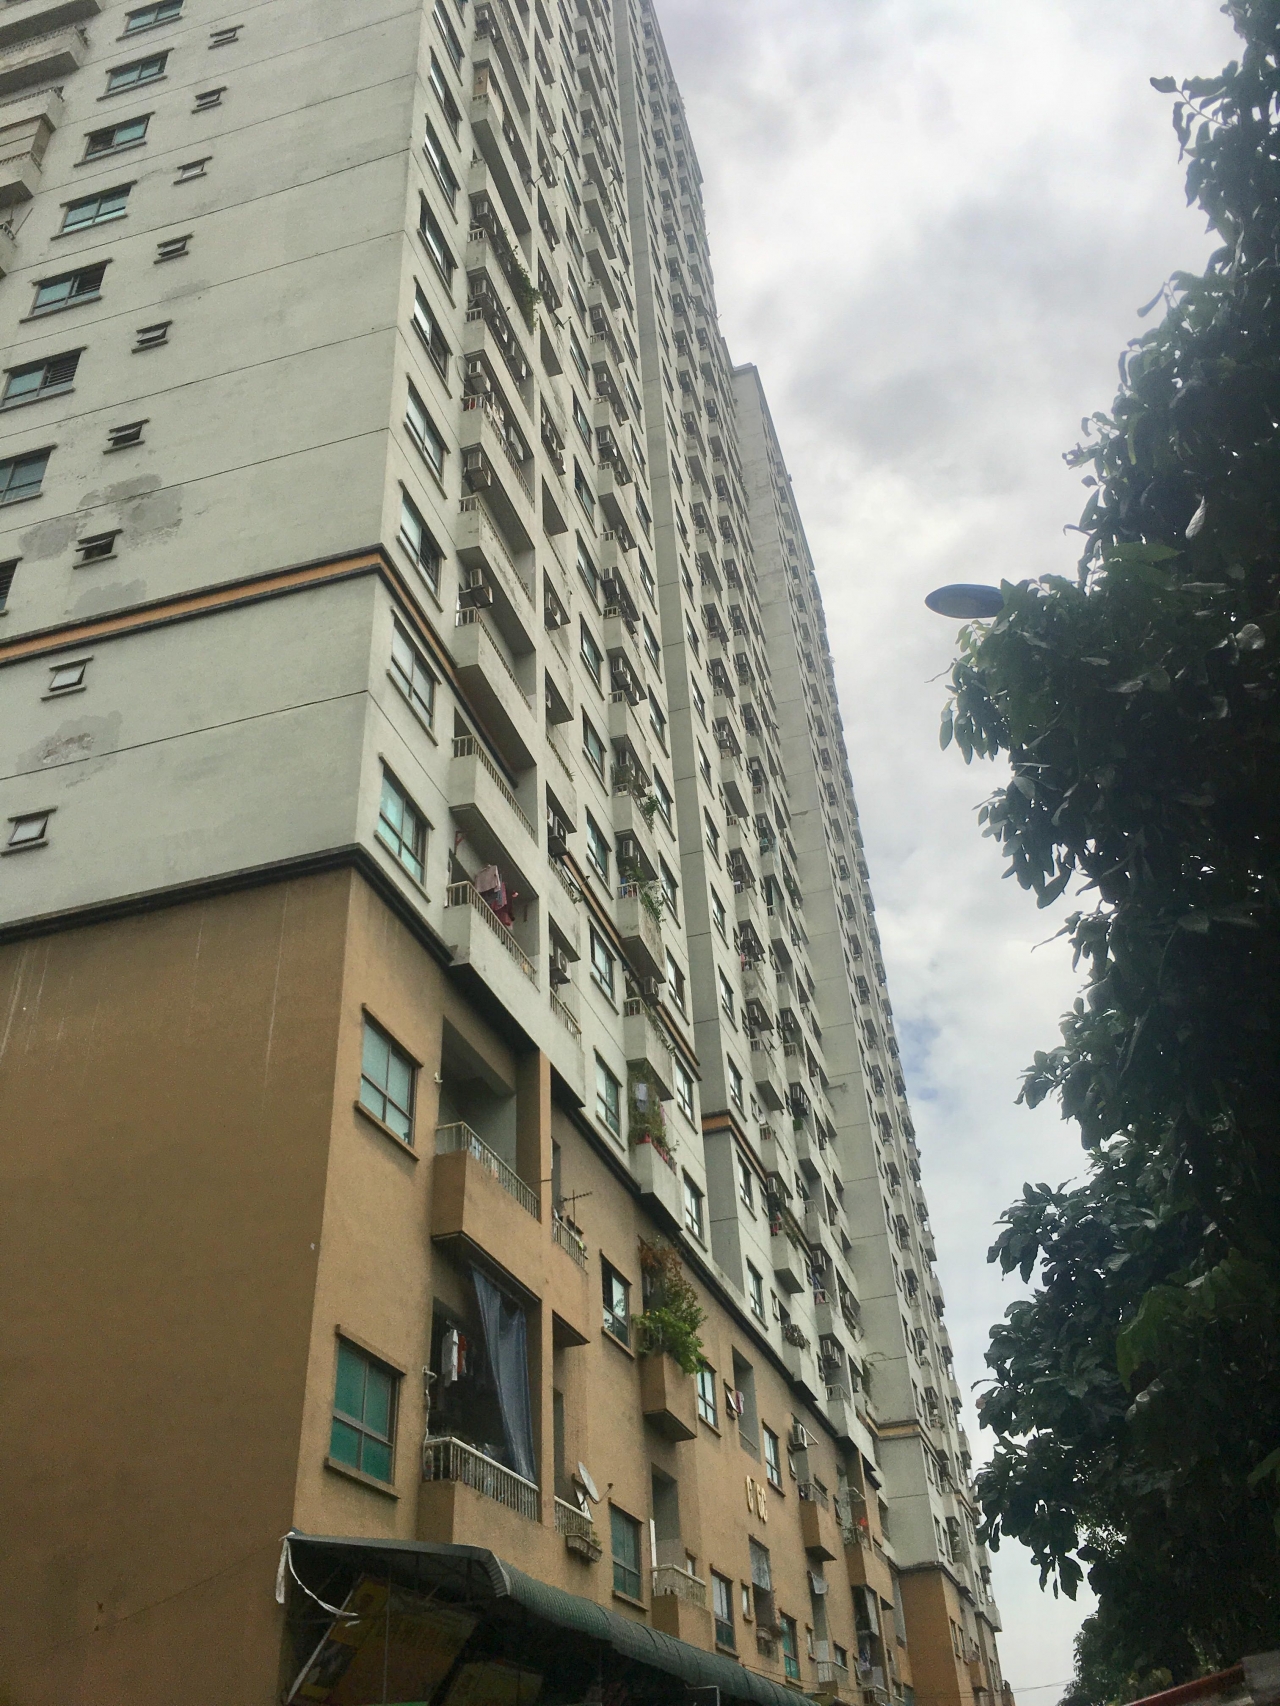 Khoảng 654 căn hộ được xác định xây dựng sai phép tại dự án chung cư CT6 Kiến Hưng.